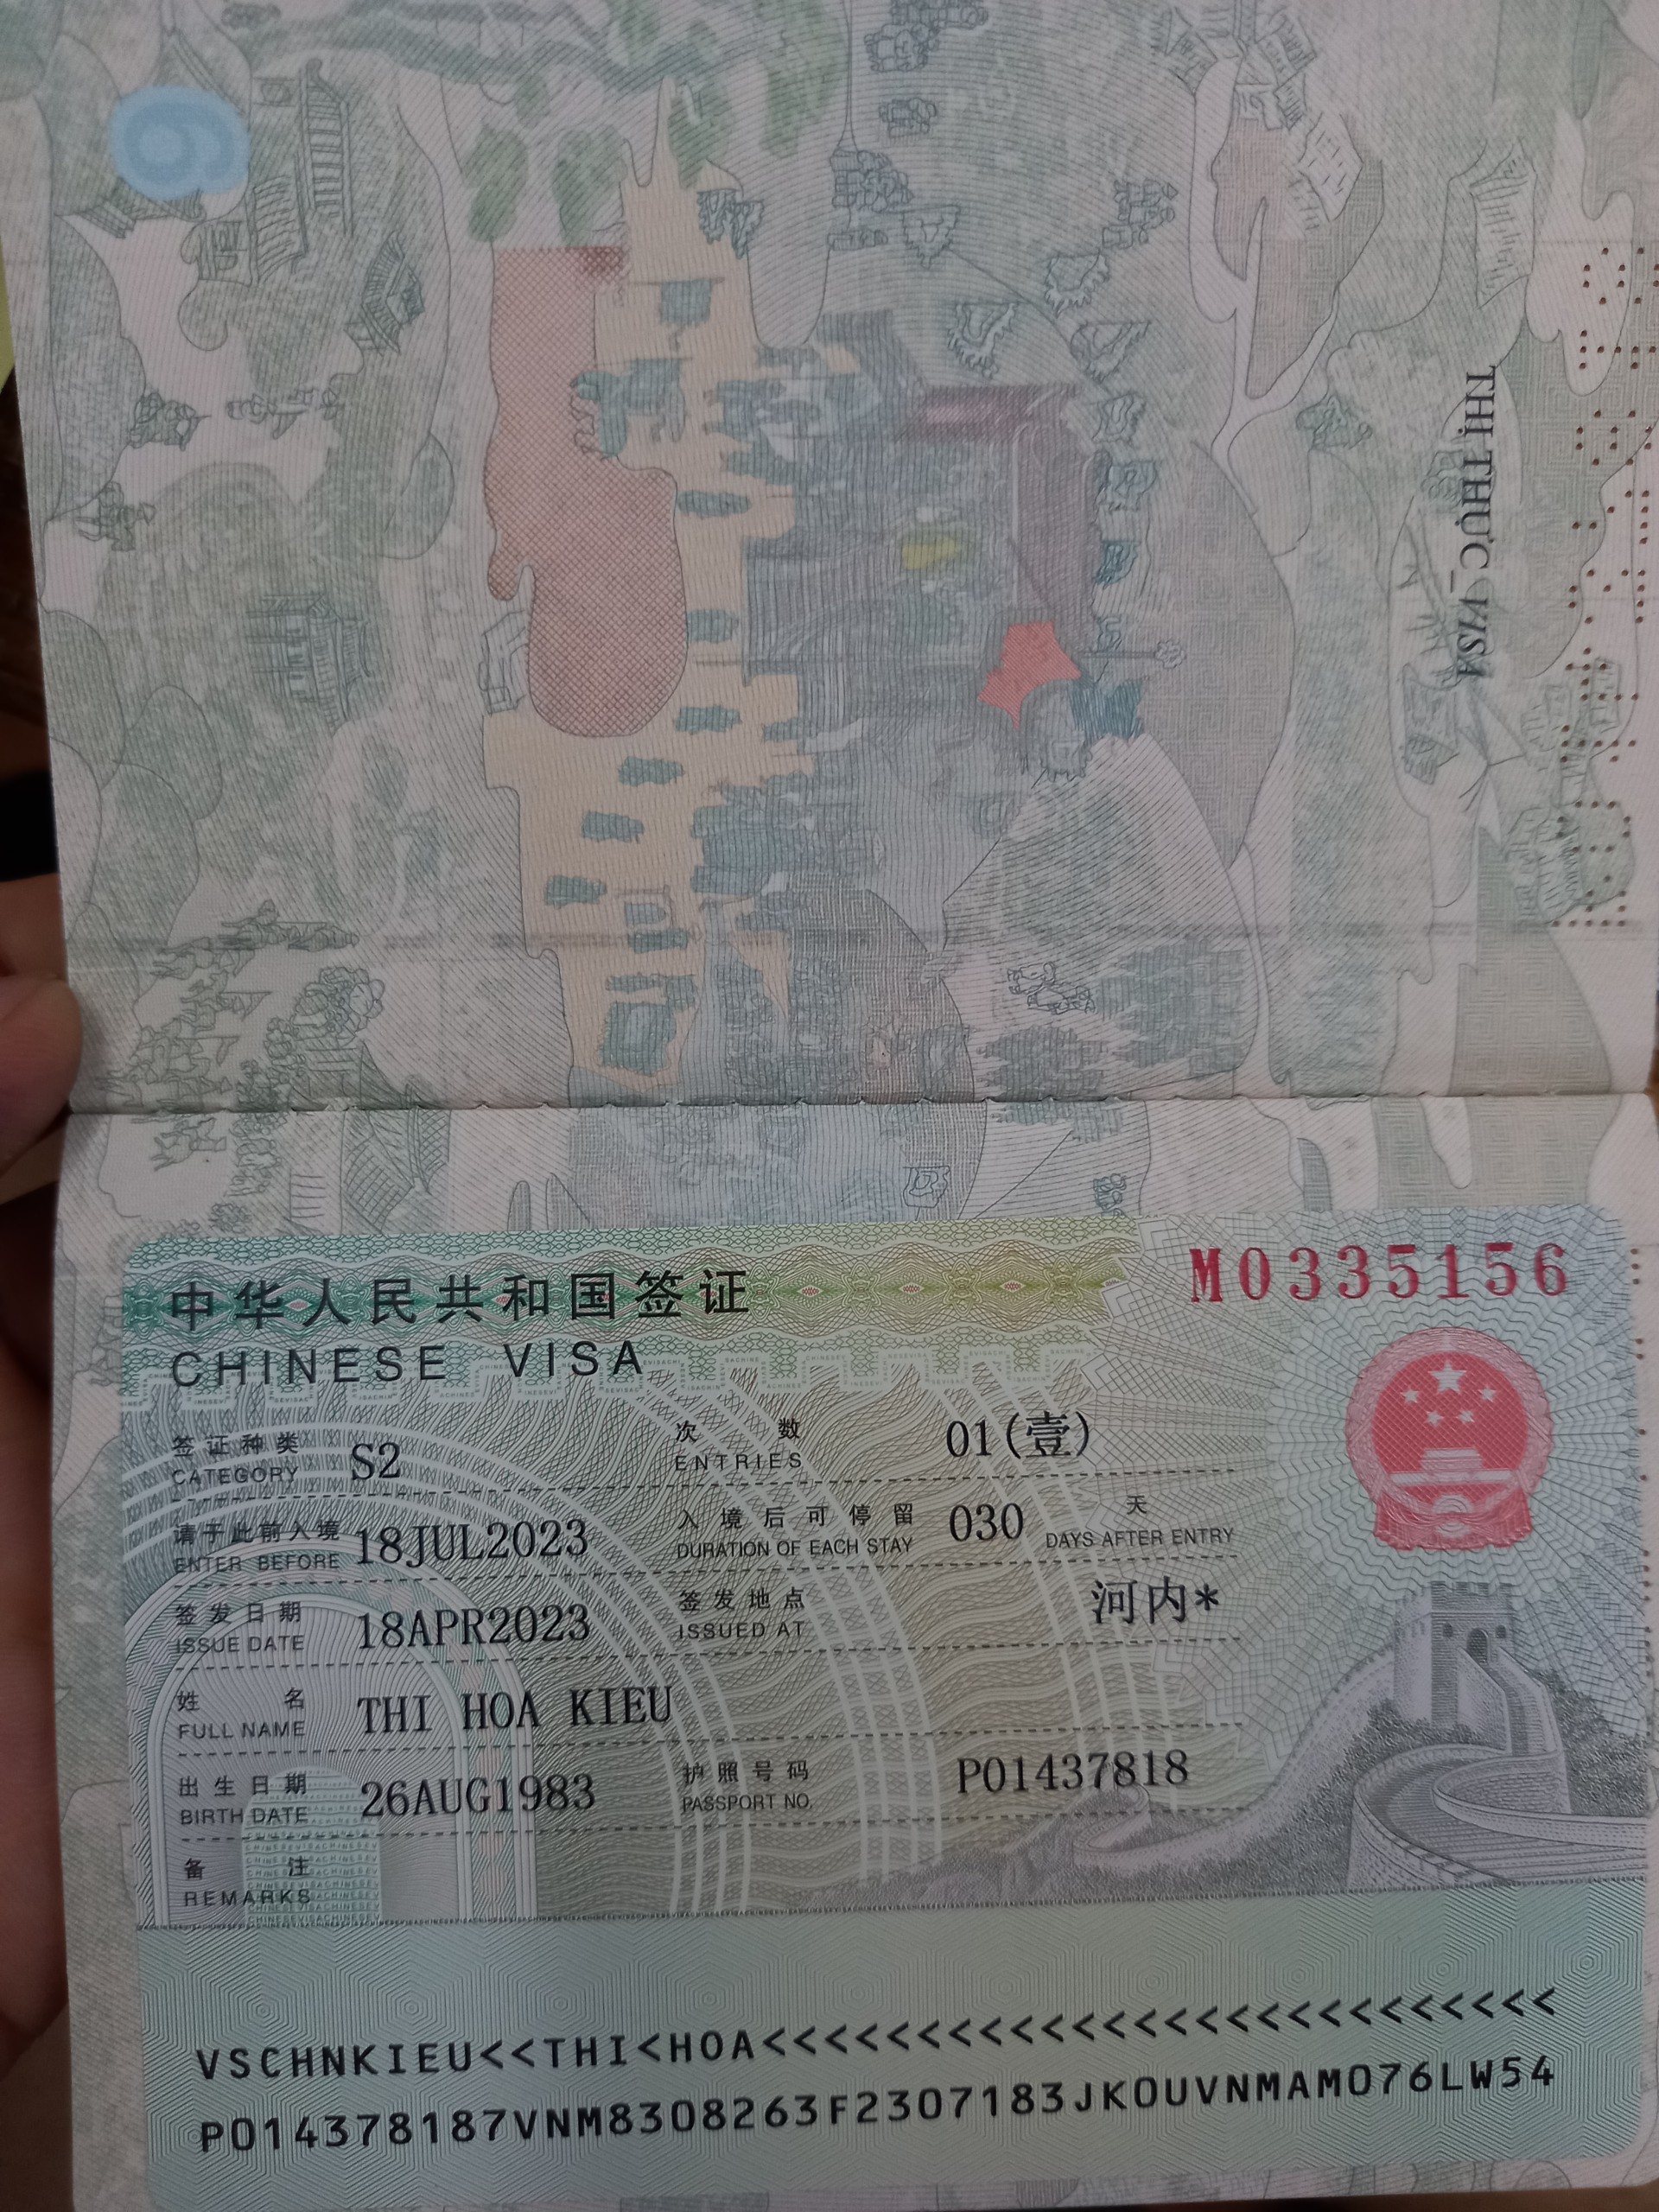 Dịch vụ xin visa kết hôn không cần có mặt người Trung Quốc